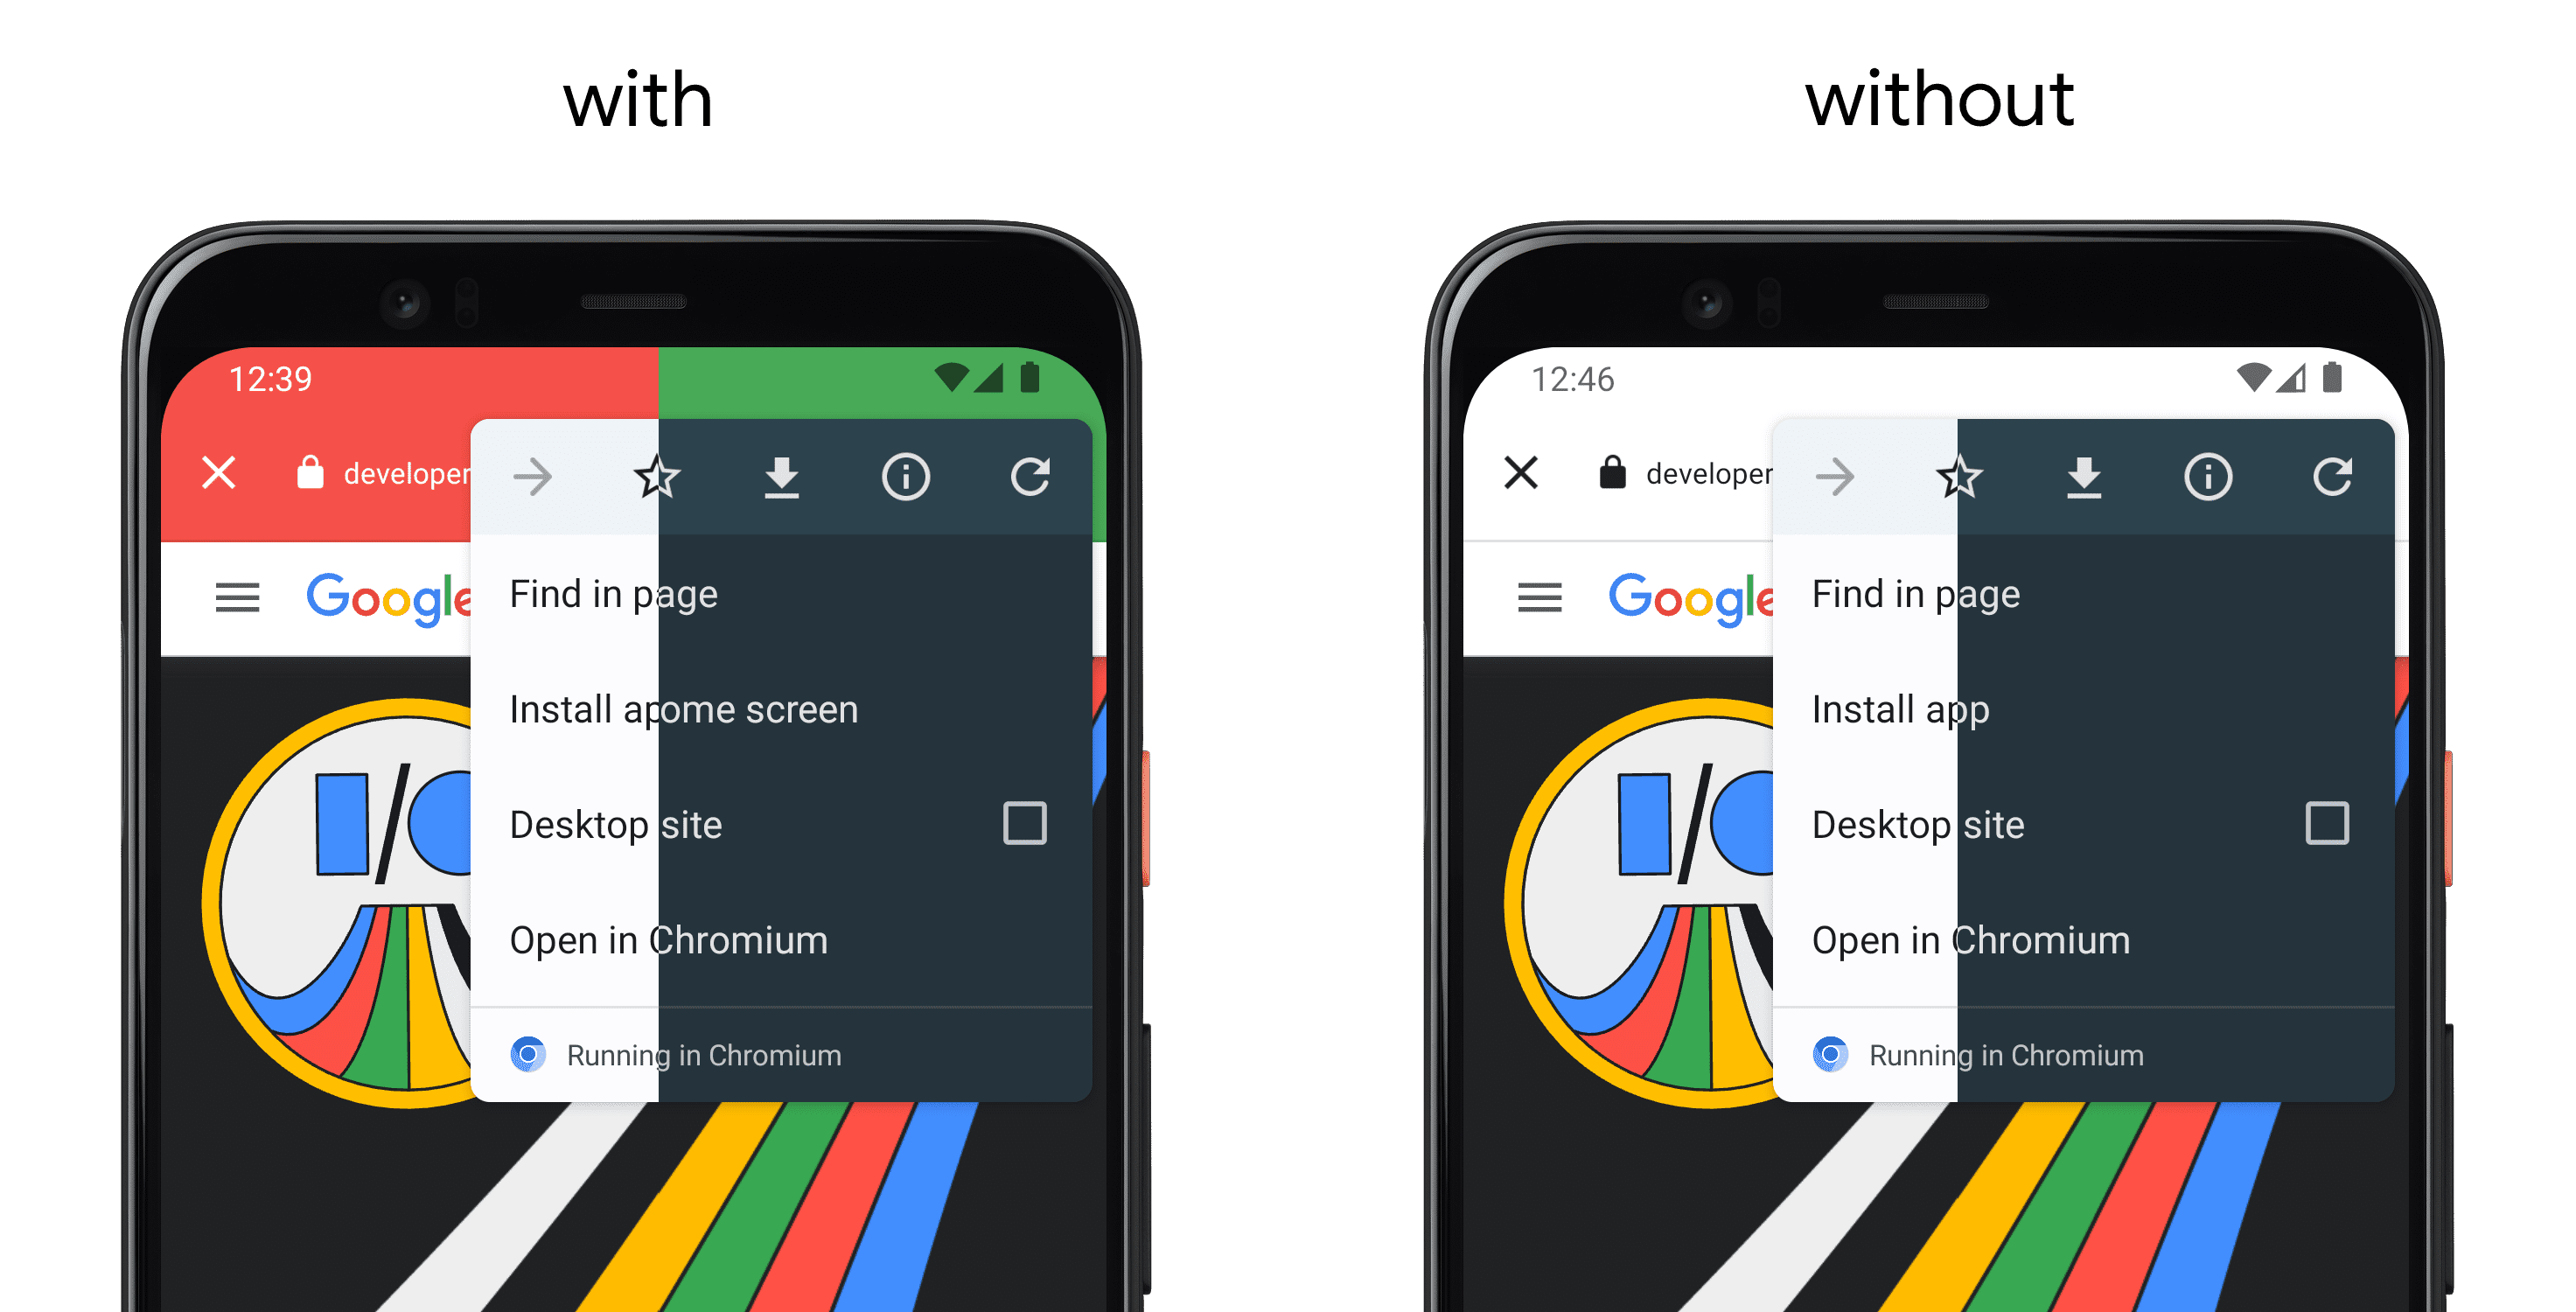 왼쪽은 setDefaultColorSchemeParams()를 사용하는 앱을 보여주는 휴대전화, 오른쪽은 API가 없는 별도의 휴대전화